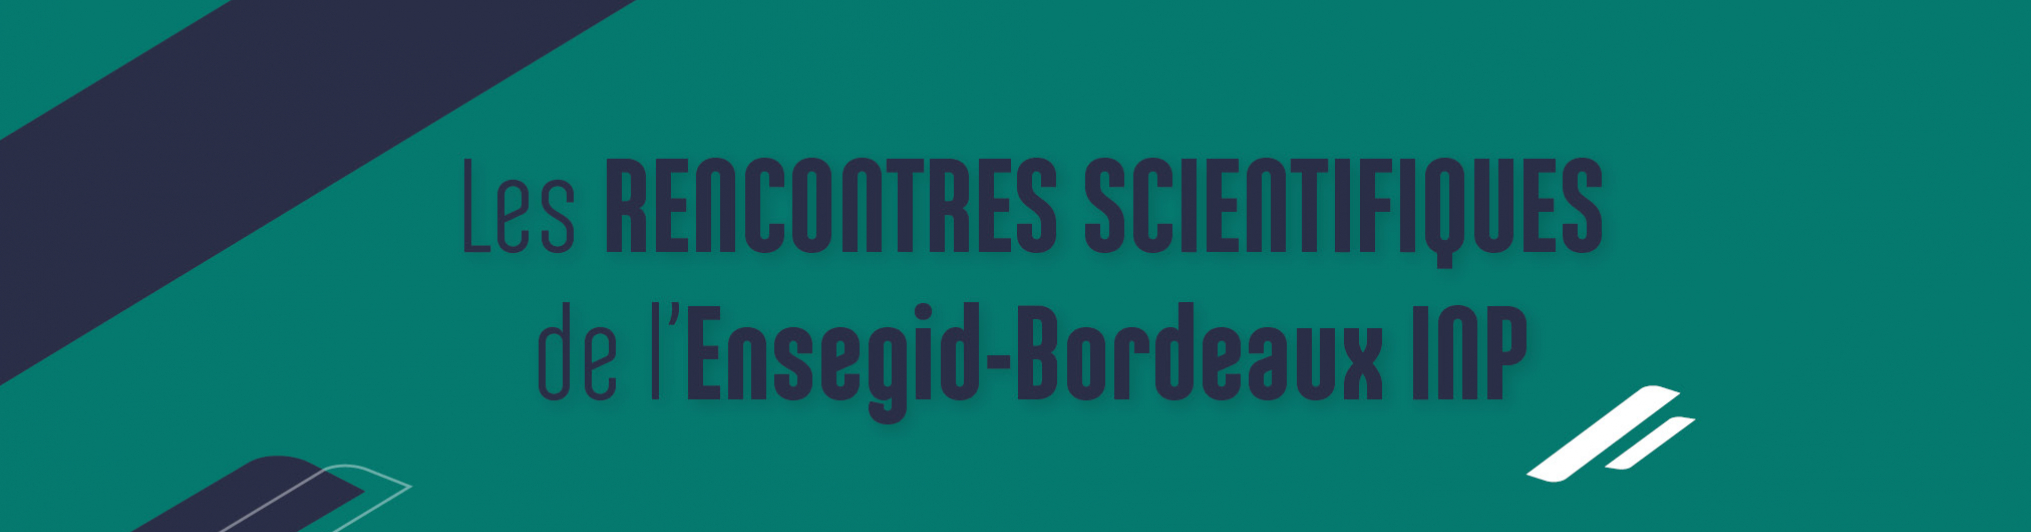 Slider des rencontres scientifiques de l'ENSEGID - Bordeaux INP